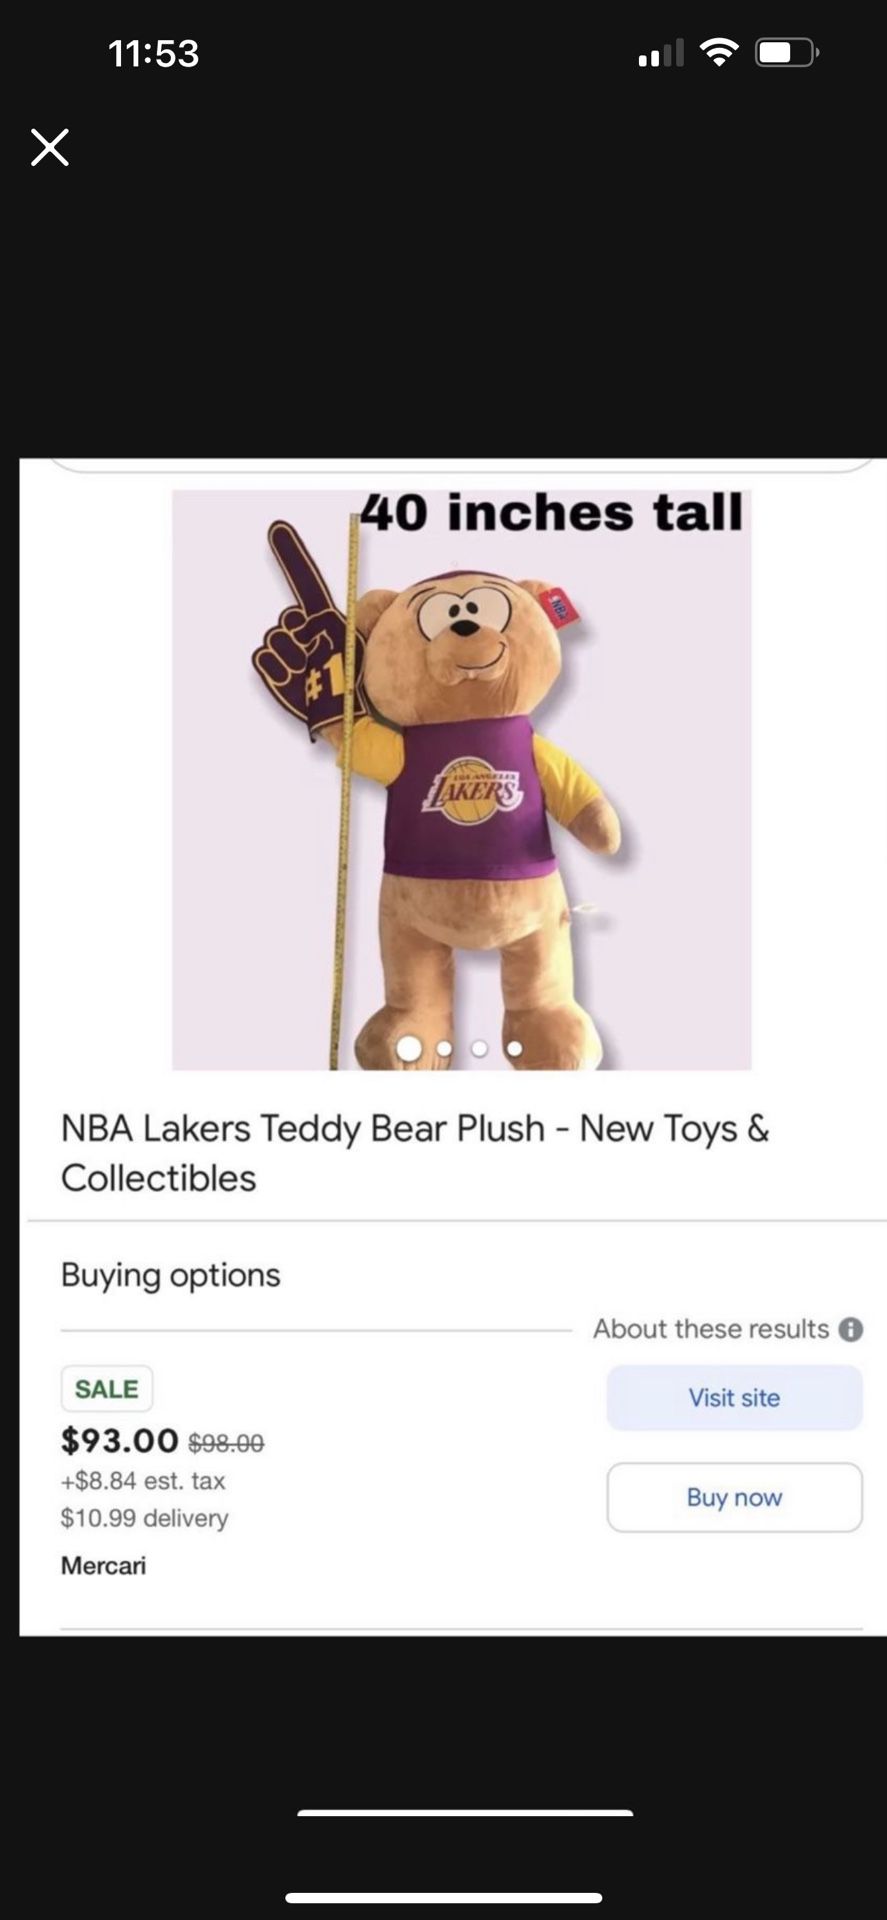 NBA Lakers Teddy Bear Plush